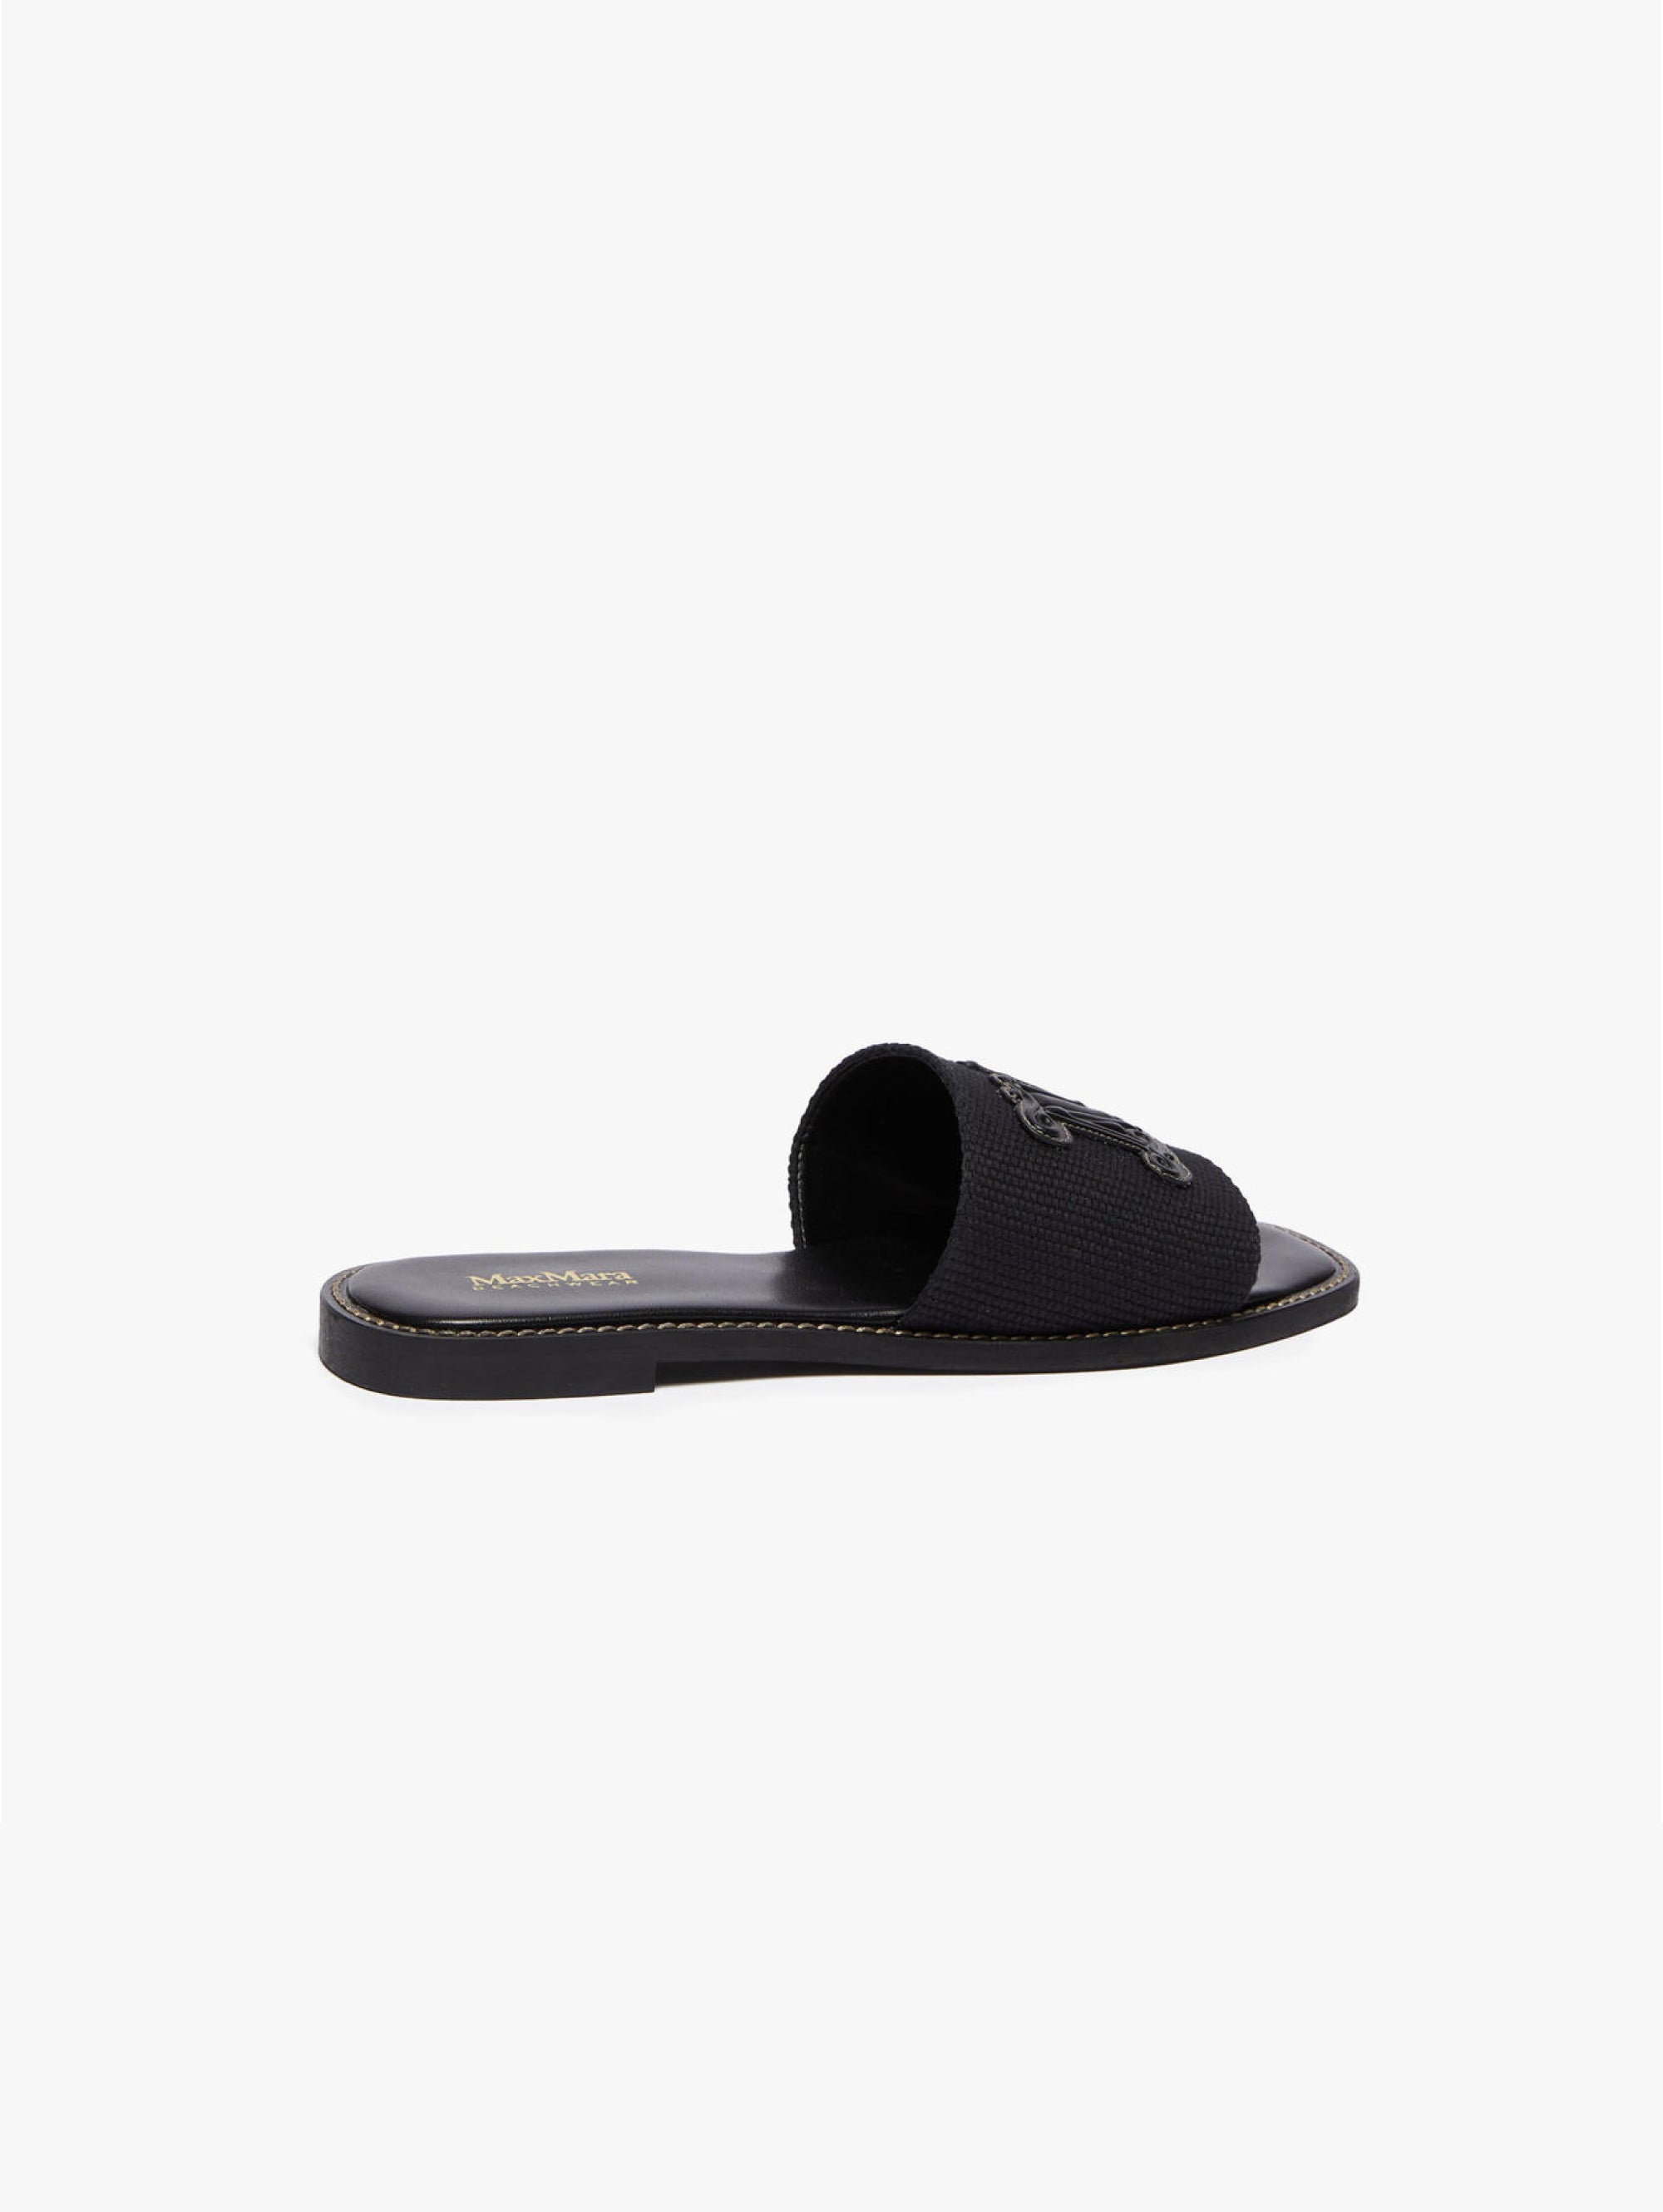 Slider-Sandalen aus Segeltuch mit schwarzem Monogramm